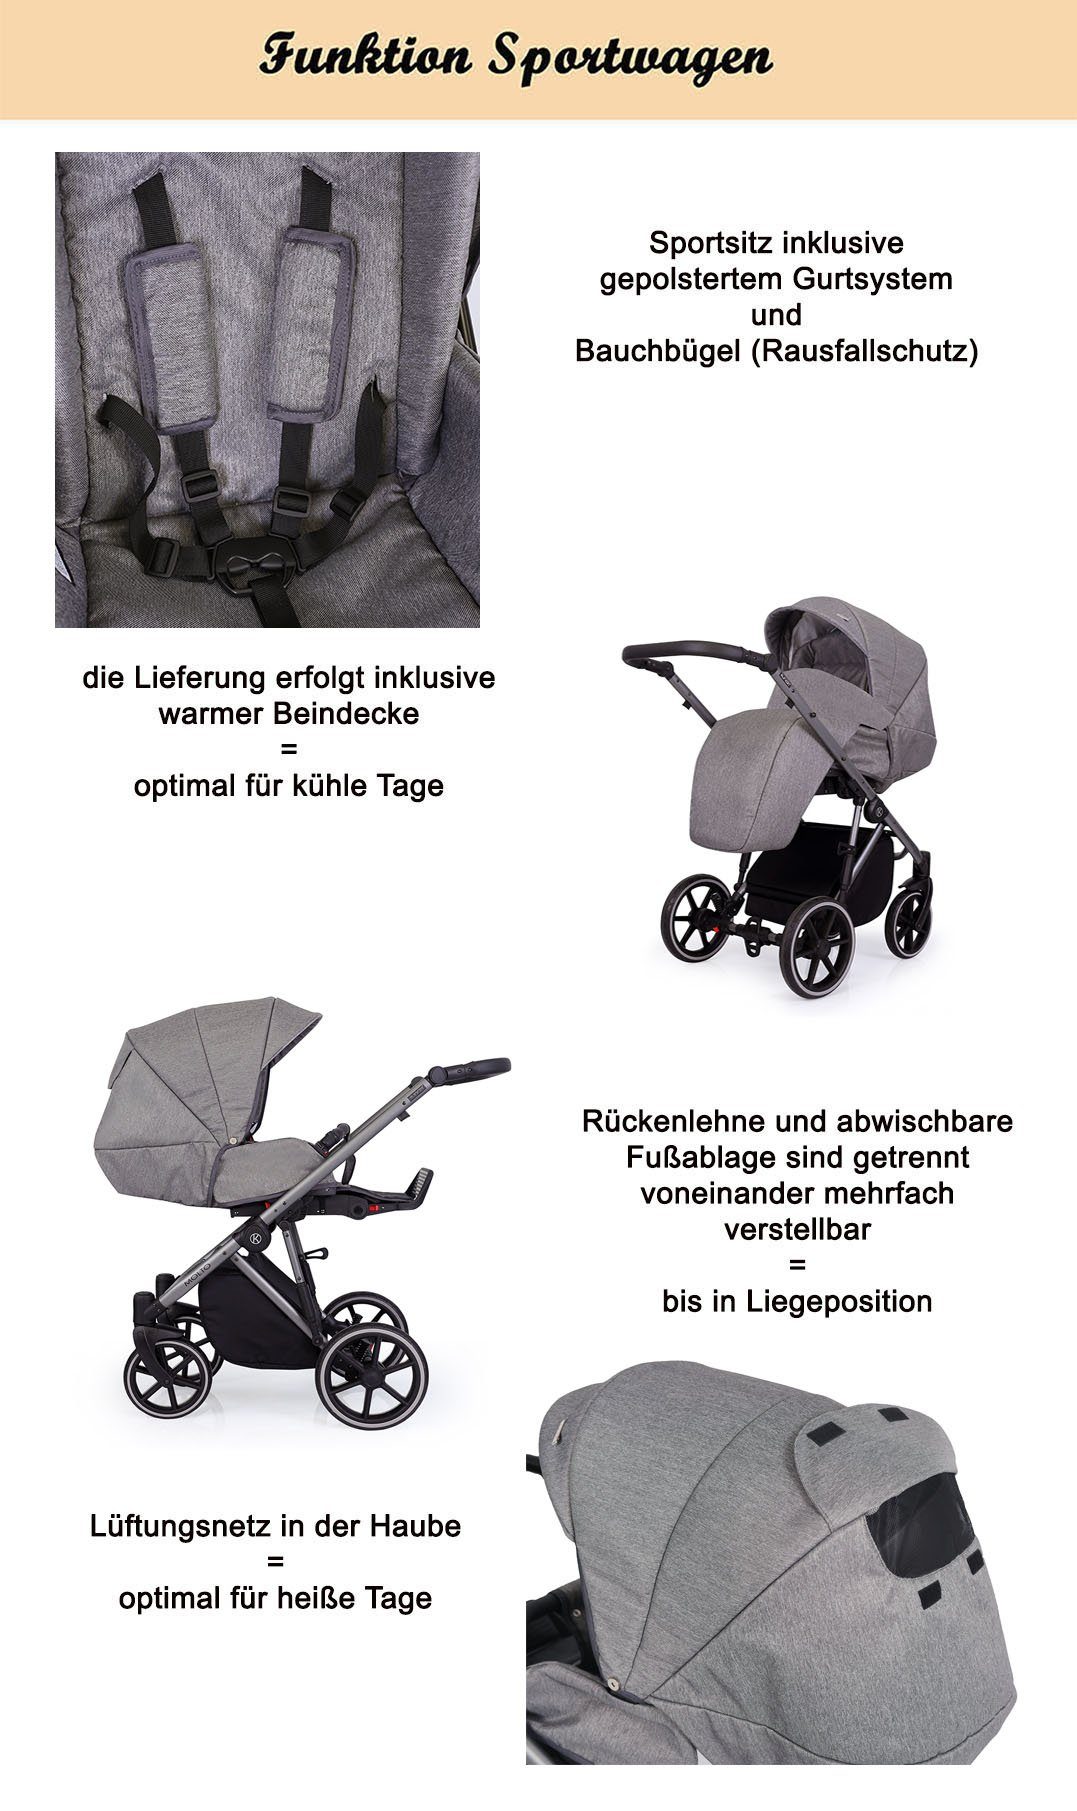 babies-on-wheels Kombi-Kinderwagen Molto Geburt Teile bis schwarzes = 14 Jahre Gestell Grau von Designs 12 1 - in 4 in 2 